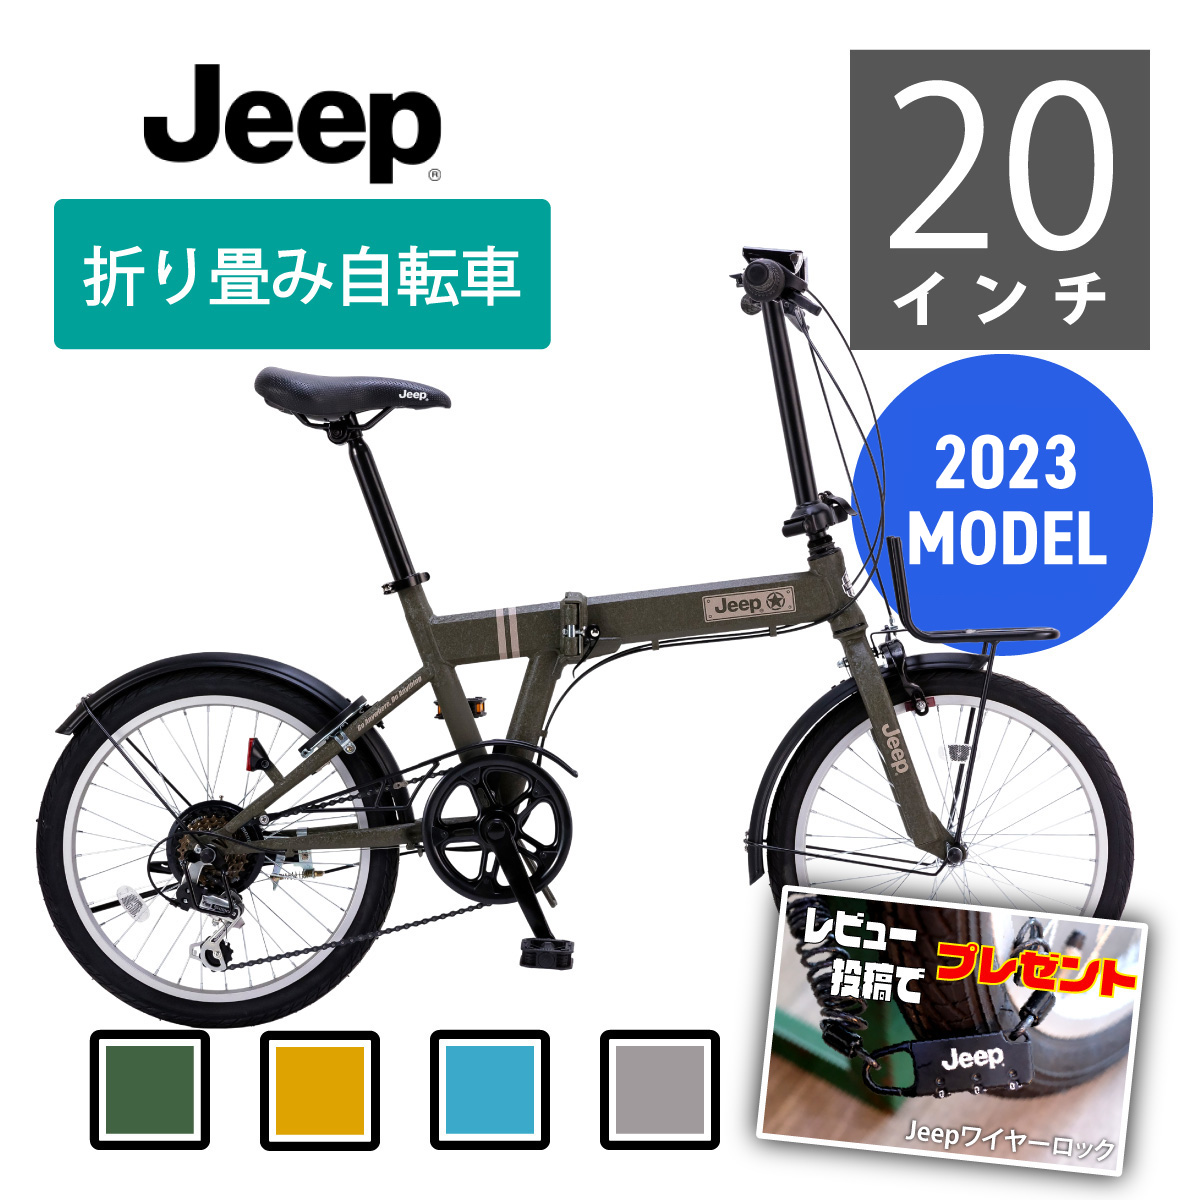 JEEP JE-206G 20インチ折りたたみ自転車2021年製 自転車本体 自転車 スポーツ・レジャー 販売直営